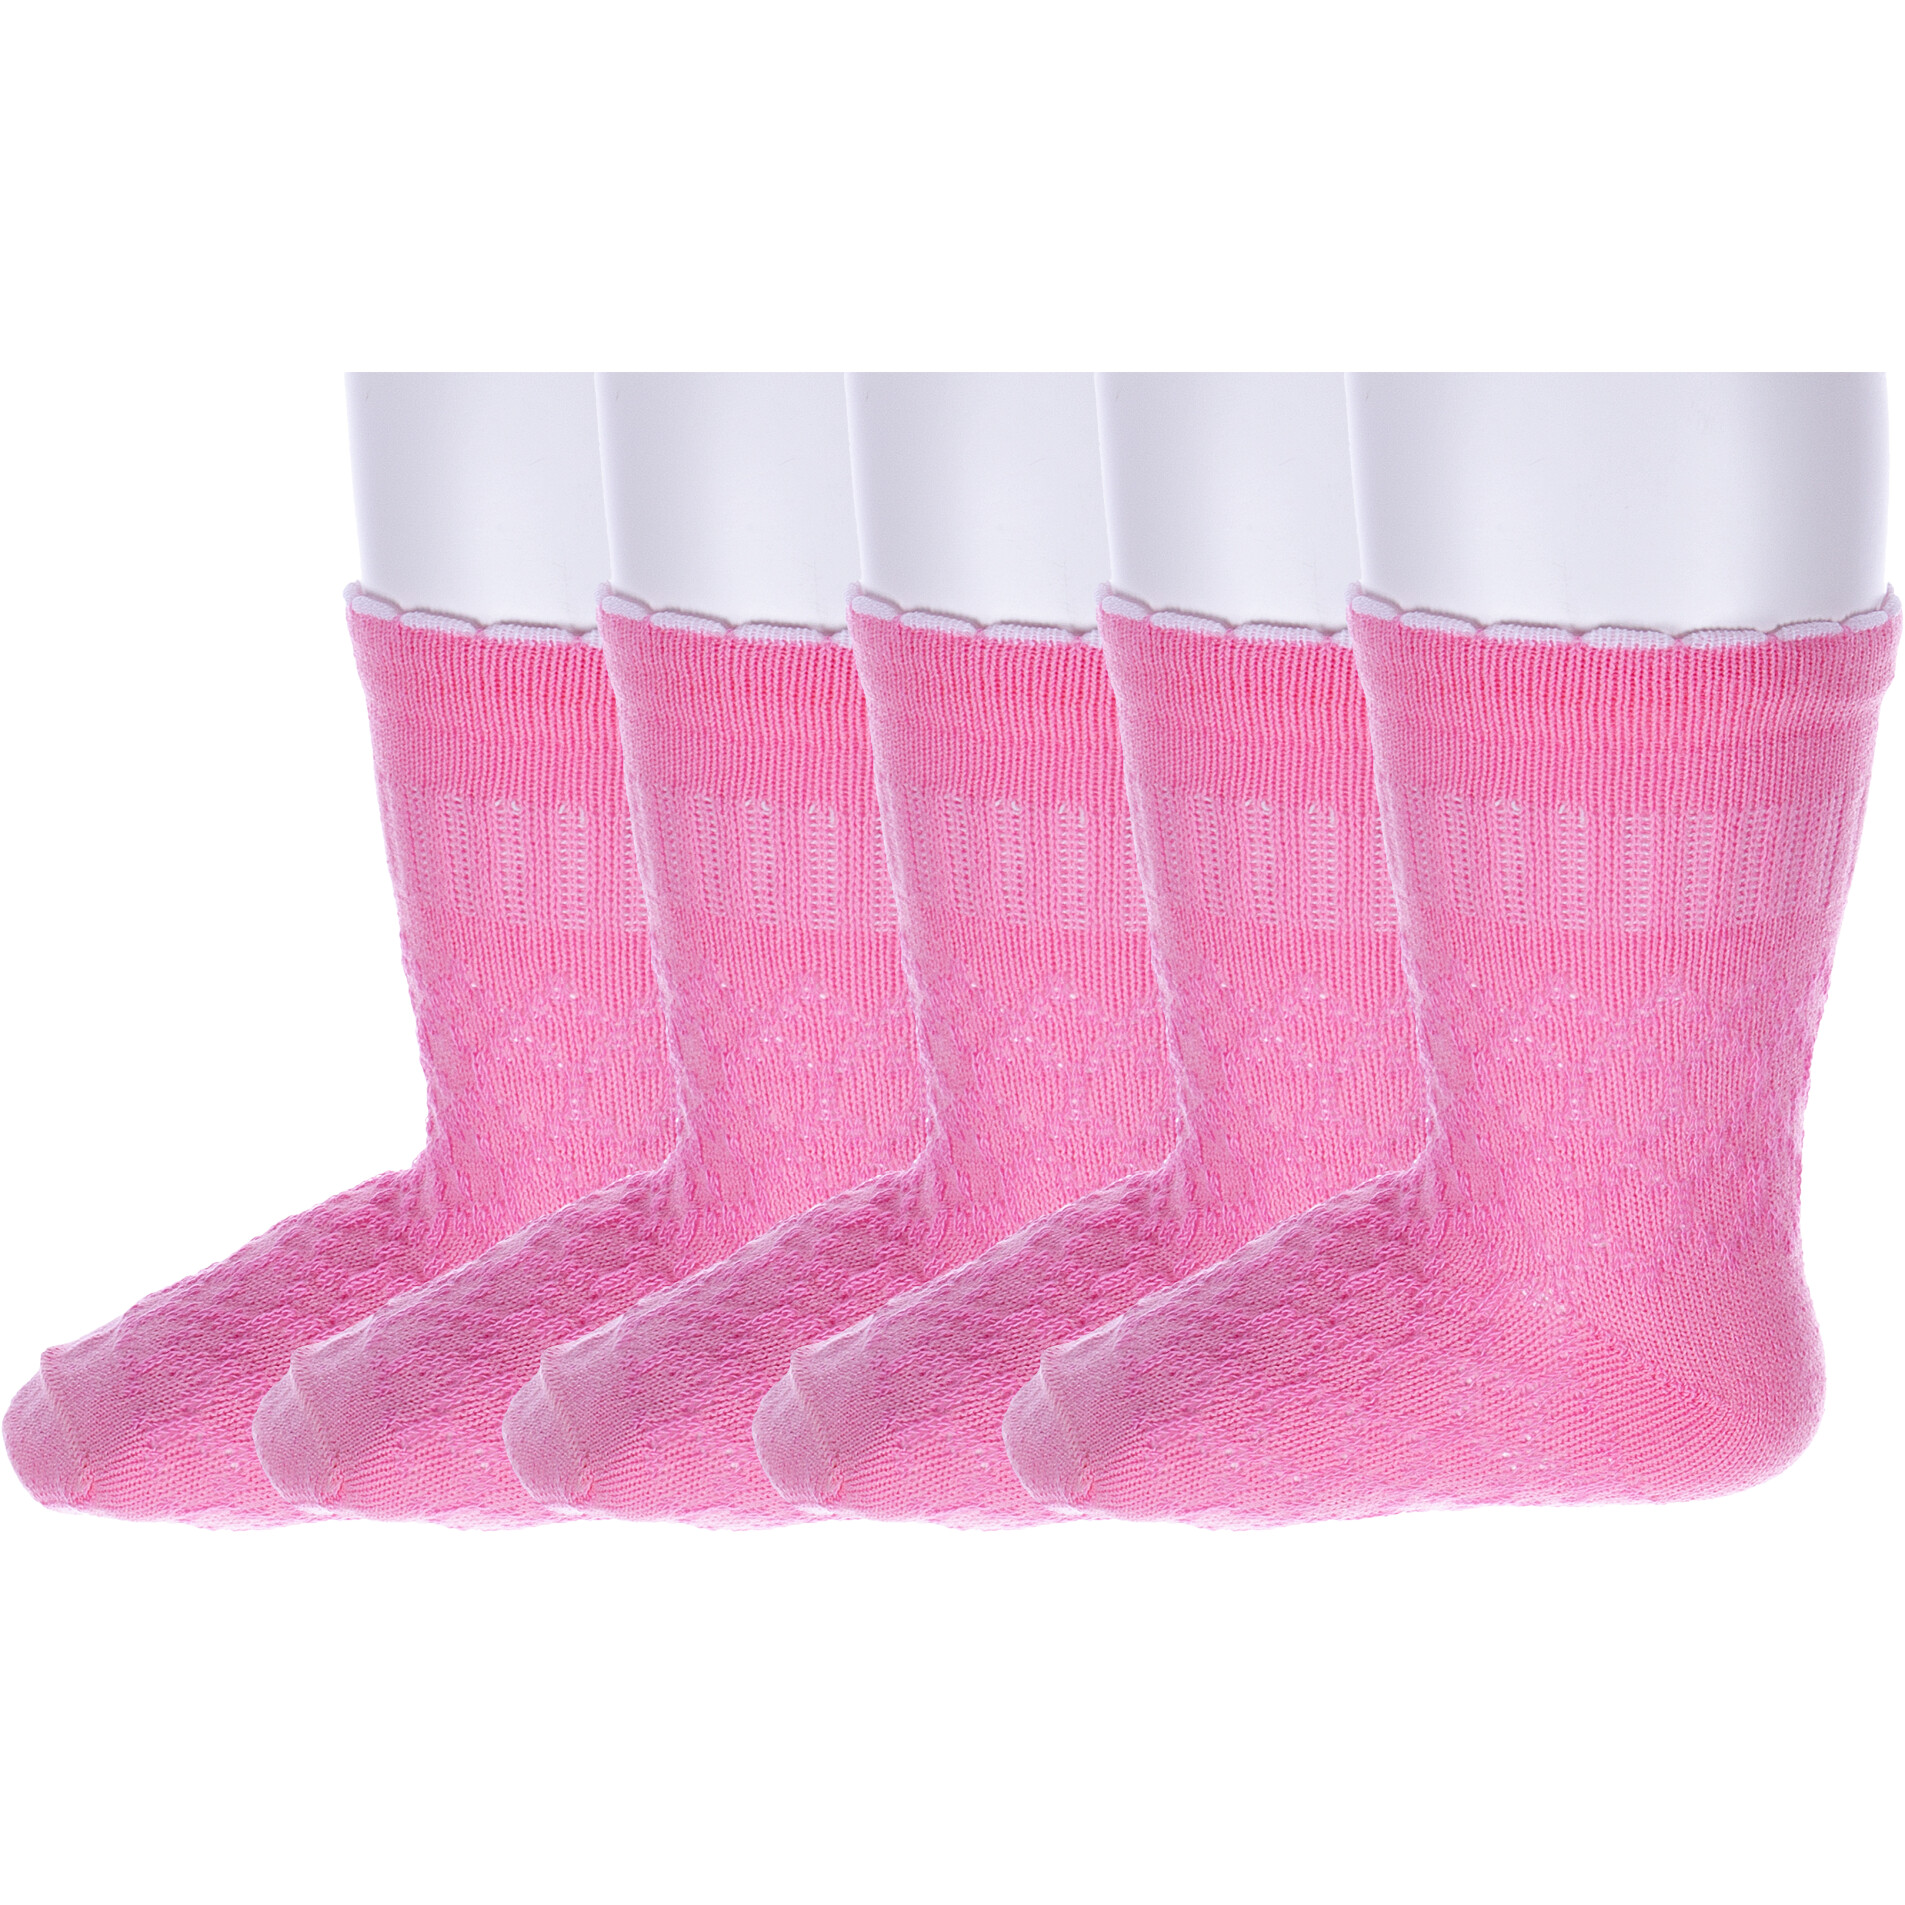 Носки детские Носкофф 5-ЛС58 розовые, 9-10, 5 пар носки детские носкофф 10 лс58 светло серые 10